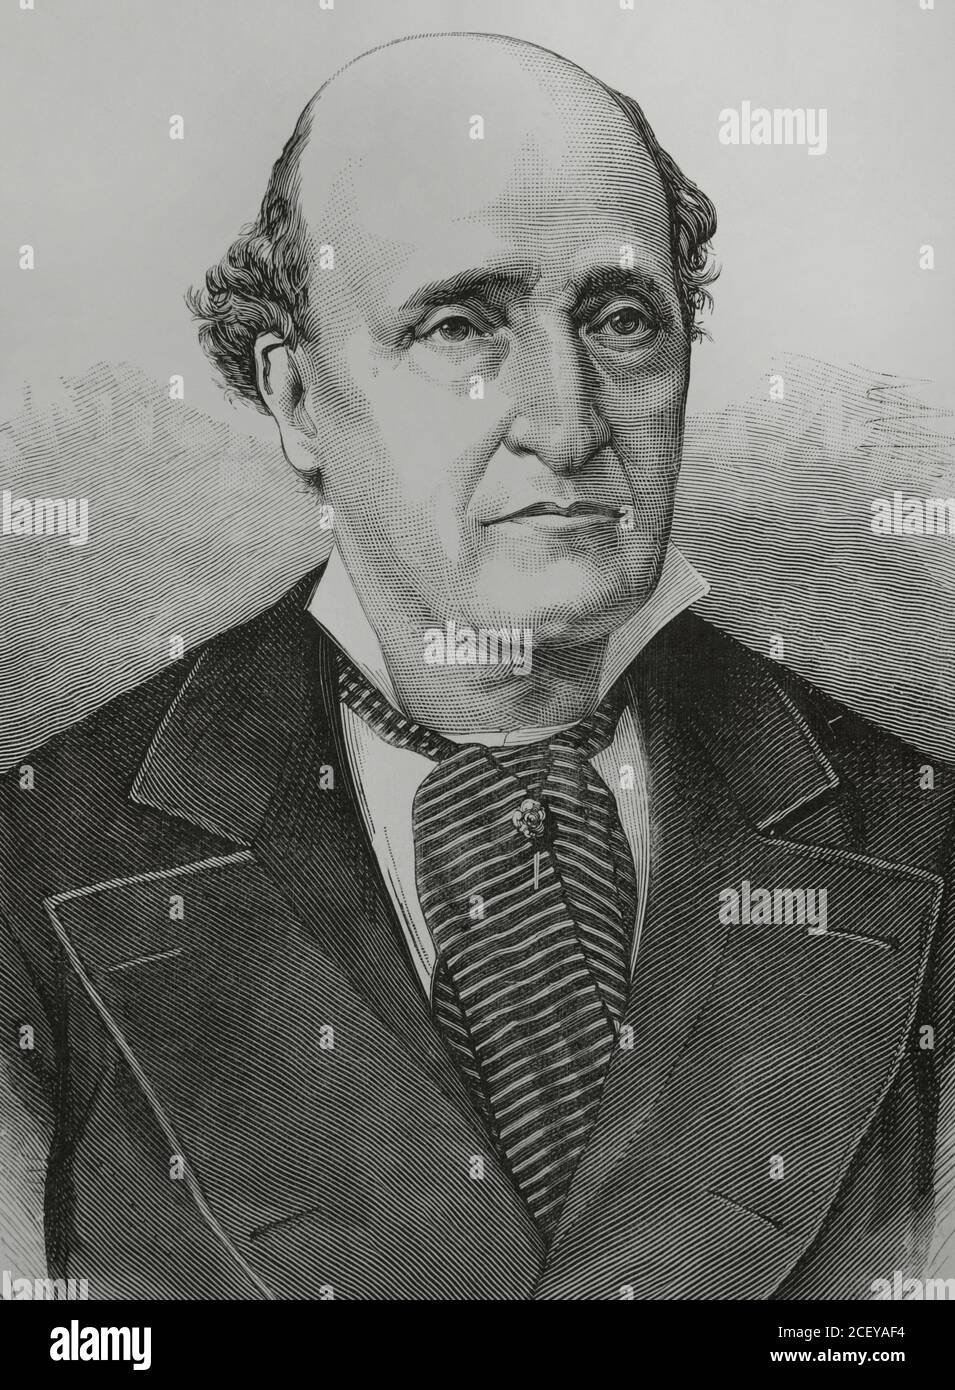 José Valero Villavicencio (1808-1891). Attore spagnolo. Illustrazione di Badillo. Incisione di Arturo Carretero. La Ilustracion Española y americana, 1881. Foto Stock